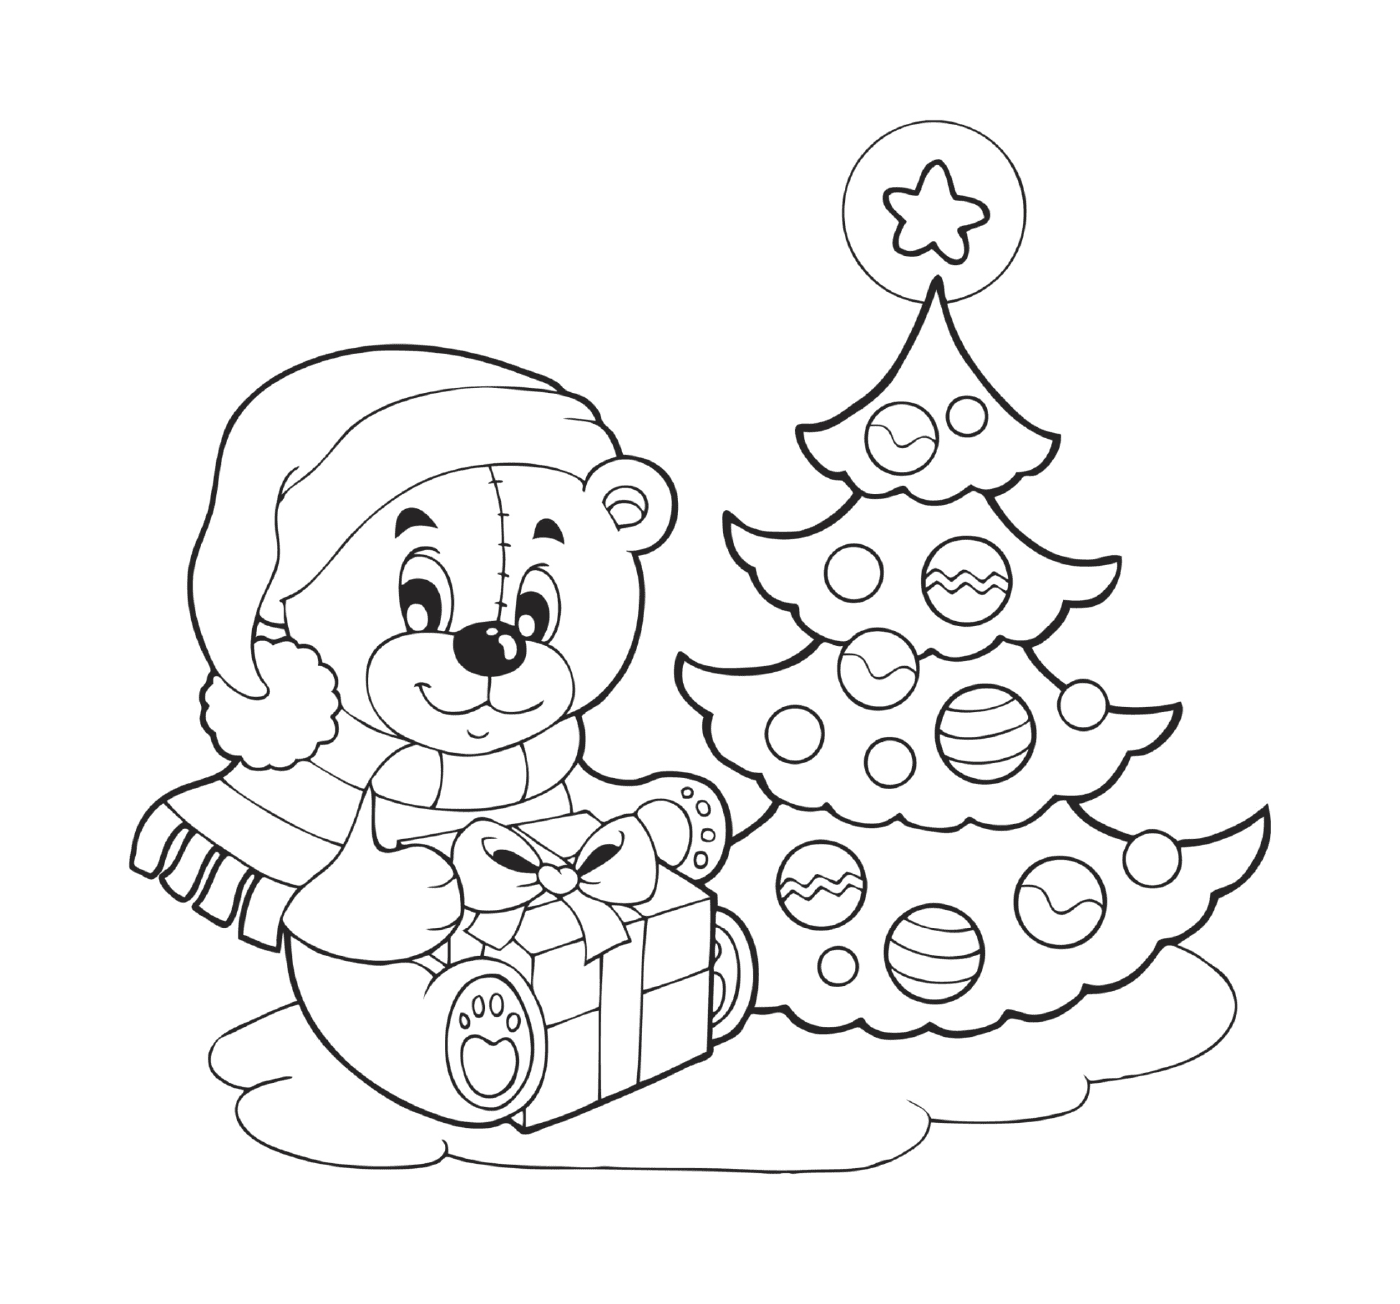  Christmas: Christmas tree and teddy bear with a gift 